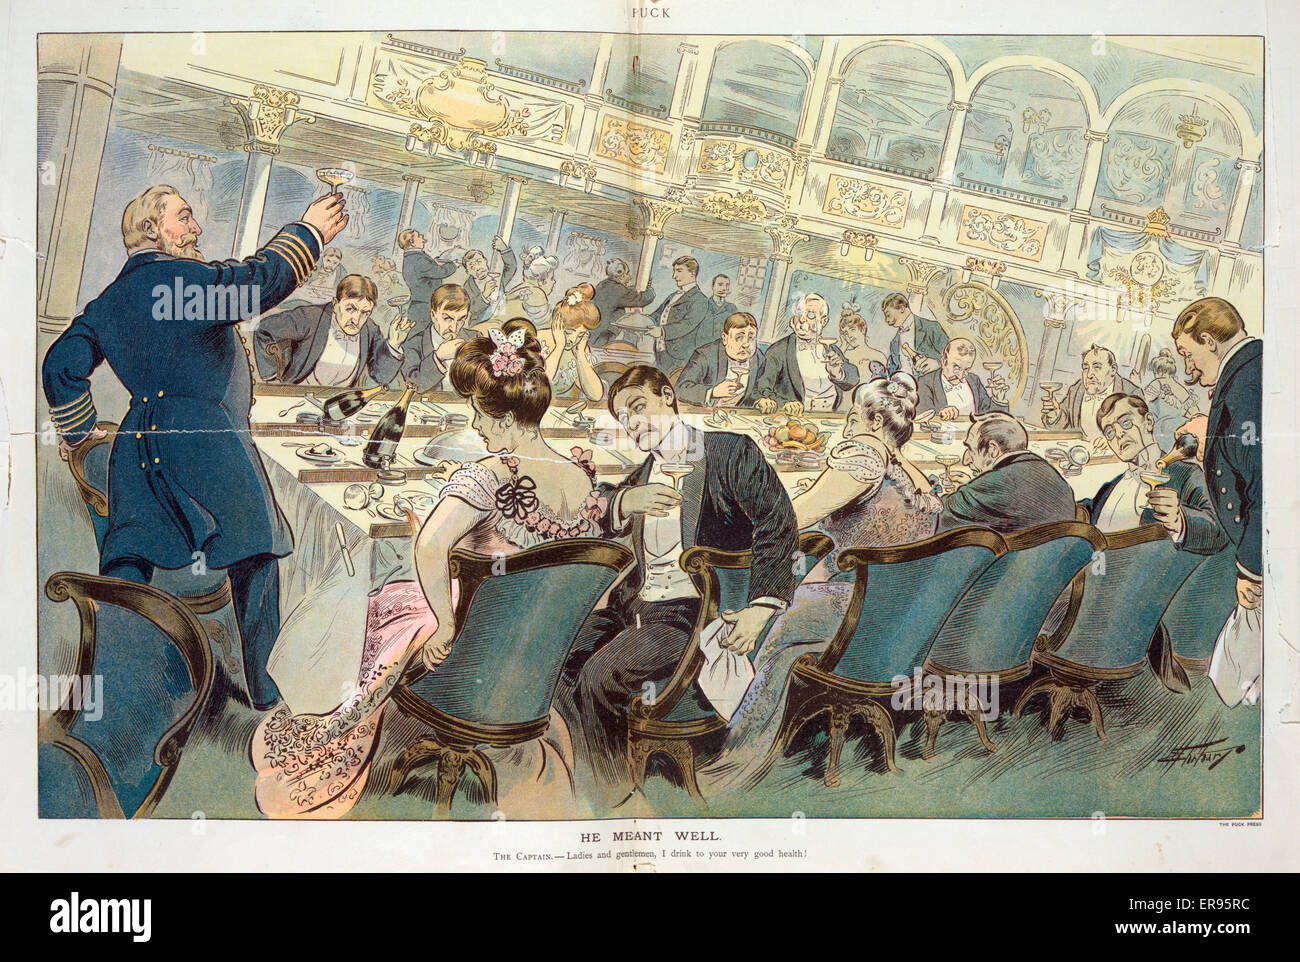 Er meinte es gut. Abbildung zeigt den Kapitän von einem Ozeandampfer bietet einen Toast auf seine Passagiere sitzen rund um einen großen Esstisch auf einem Schiff, das ein bisschen Schaukeln ist zu viel für die meisten Passagiere. Datum 1904 11 Mai. Stockfoto